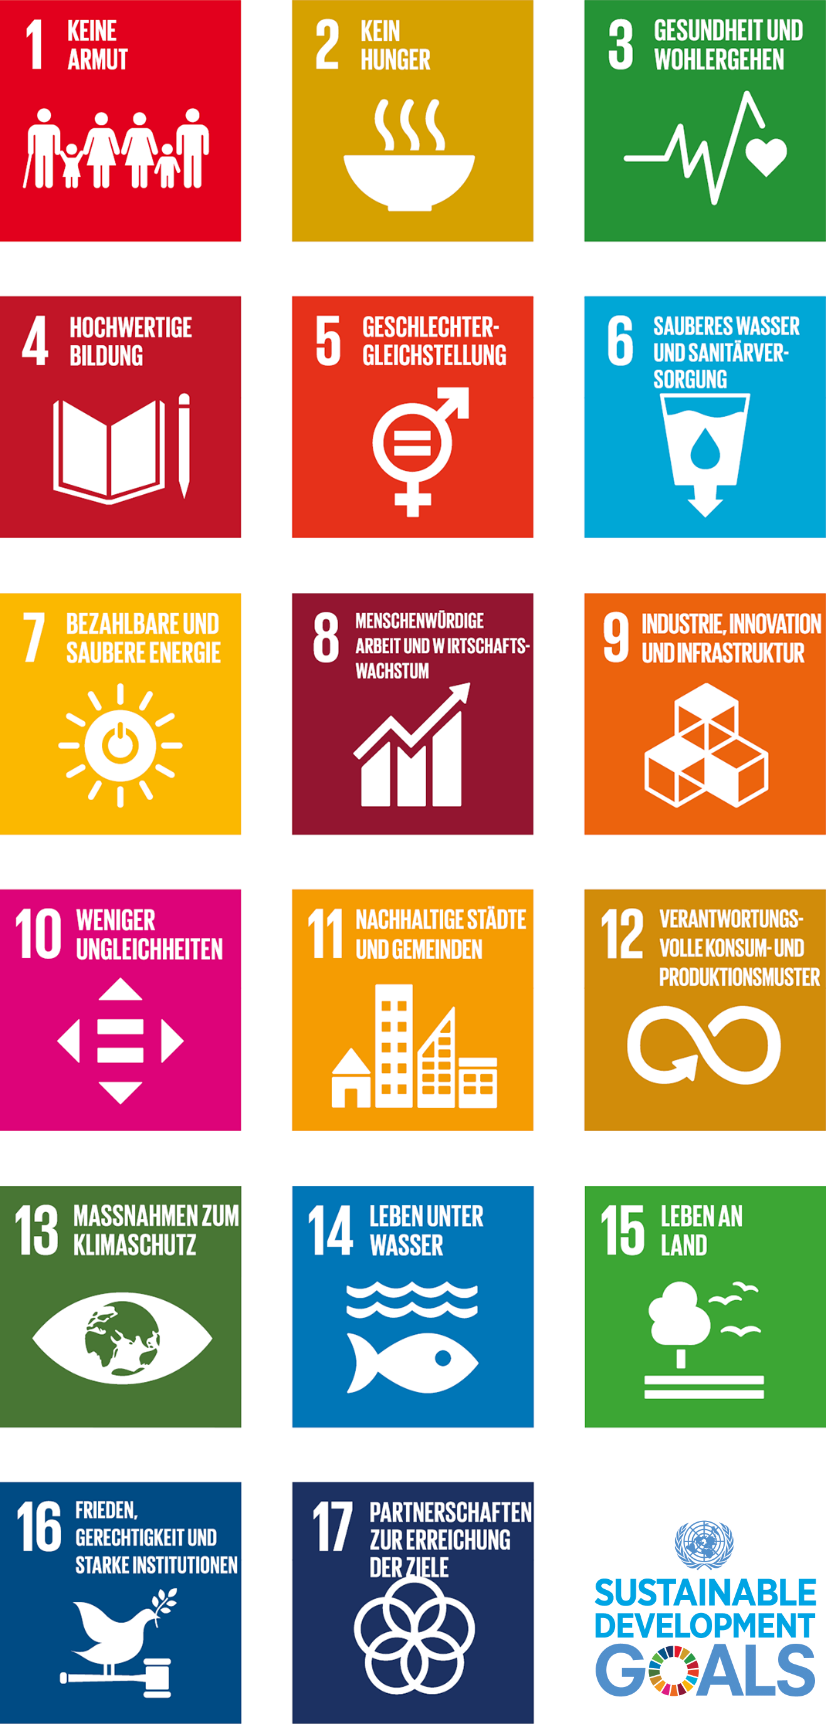 Piktogramme der 17 Ziele für nachhaltige Entwicklung der Vereinten Nationen: 1. keine Armut, 2. kein Hunger, 3. Gesundheit und Wohlergehen, 4. hochwertige Bildung, 5. Geschlechtergleichstellung, 6. sauberes Wasser und Sanitärversorgung, 7. bezahlbare saubere Energie, 8. menschenwürdige Arbeit und Wirtschaftswachstum, 9. Industrie, Innovation und Infrastruktur, 10. weniger Ungleichheiten, 11. nachhaltige Städte und Gemeineden, 12. verantwortungsvolle Konsum- und Produktionsmuster, 13. Maßnahmen zum Klimaschutz, 14. Leben unter Wasser, 15. Leben an Land, 16. Frieden, Gerechtigkeit und starke Institutionen, 17. Partnerschaften zur Erreichung der Ziele